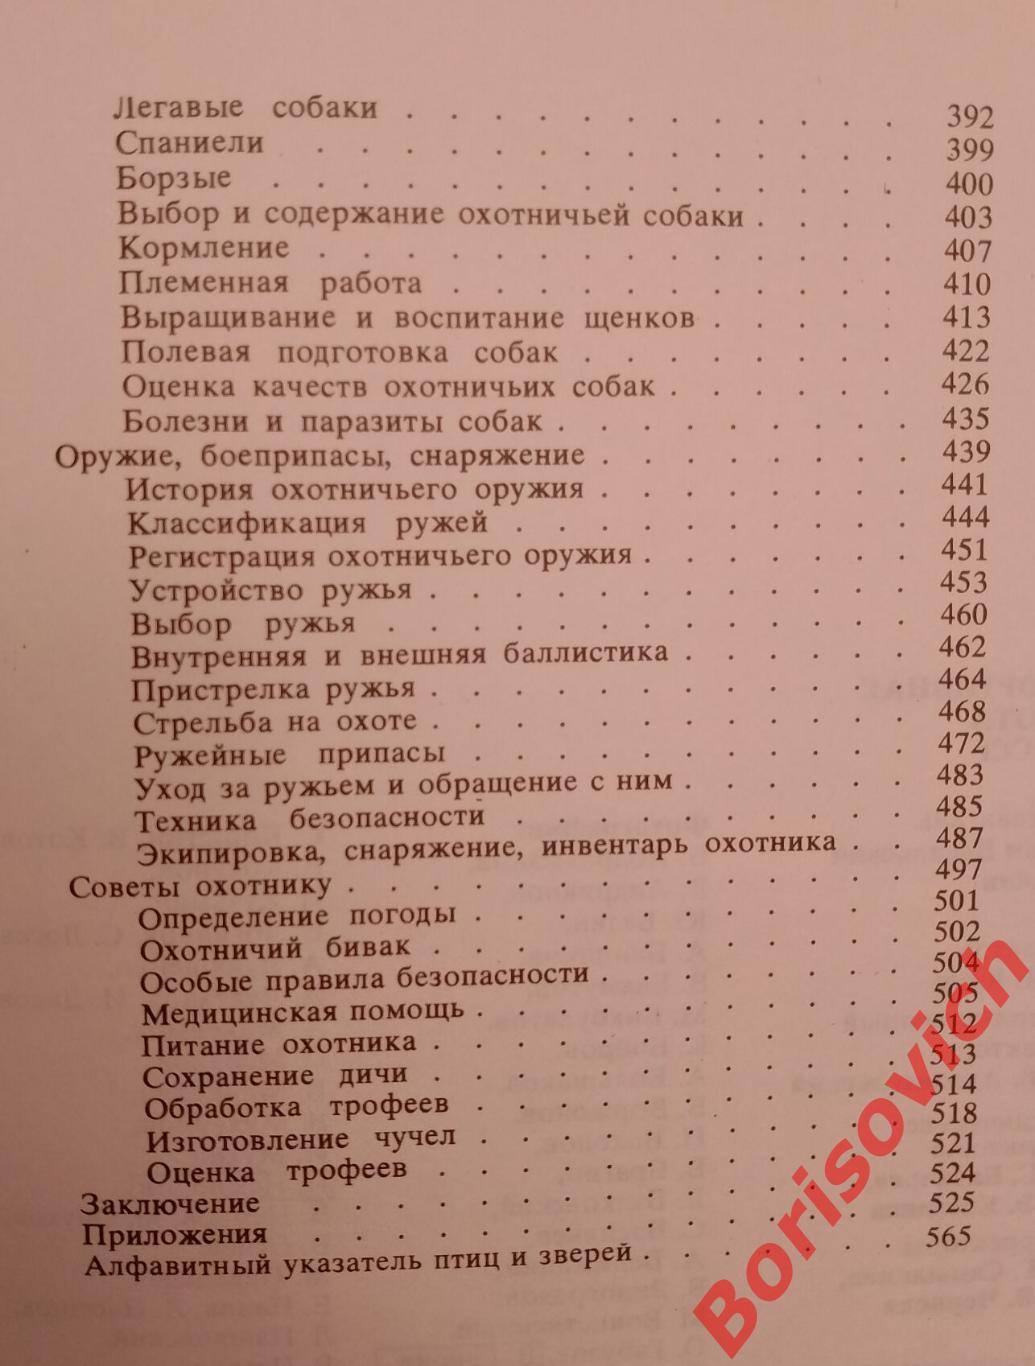 СПОРТИВНАЯ ОХОТА В СССР 1981 г ФиС 568 страниц 4